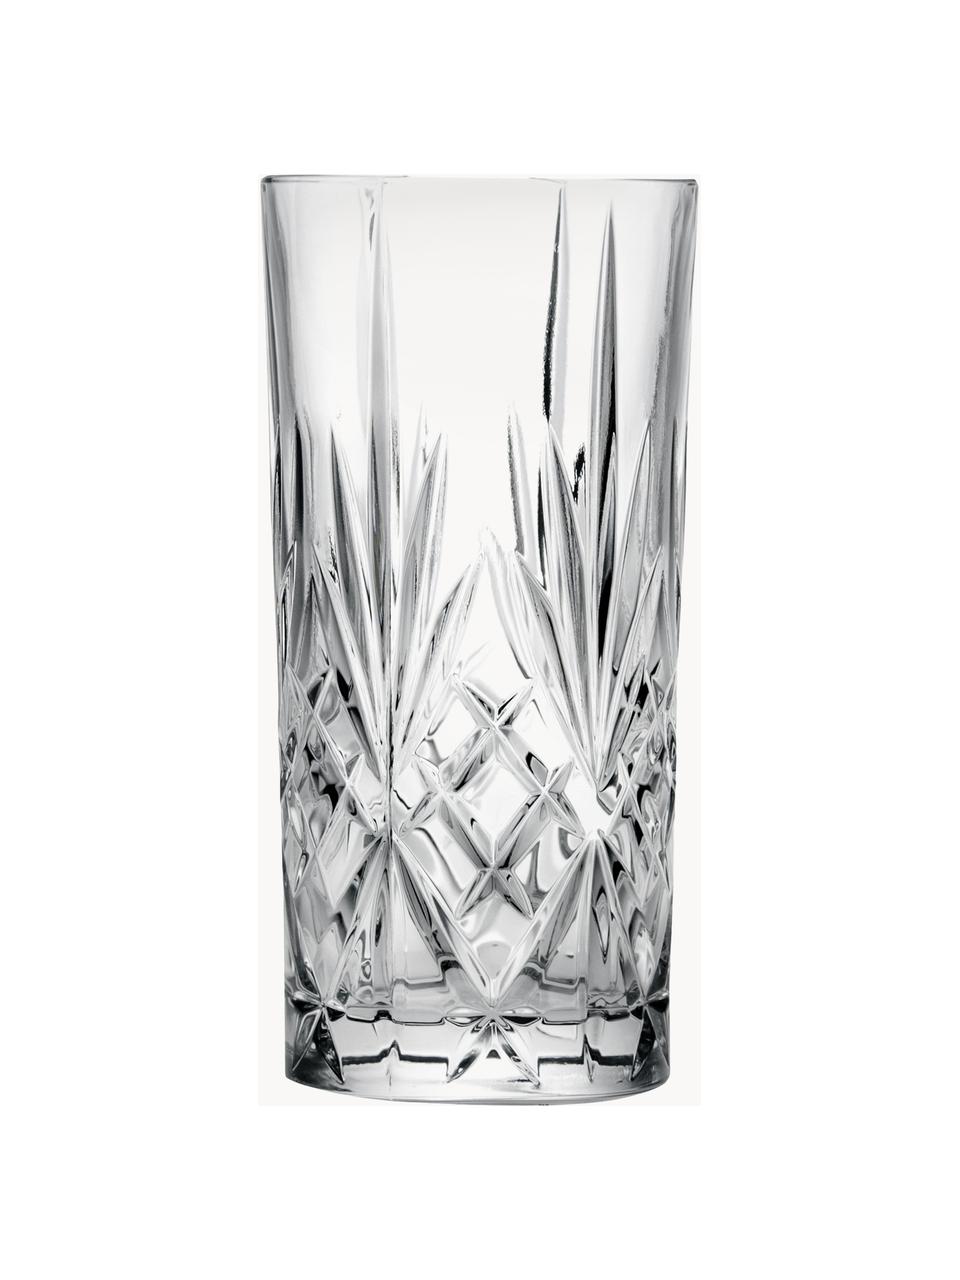 Kristall-Longdrinkgläser Bichiera mit Relief, 4er-Set, Kristallglas, Transparent, Ø 7 x H 15 cm, 360 ml